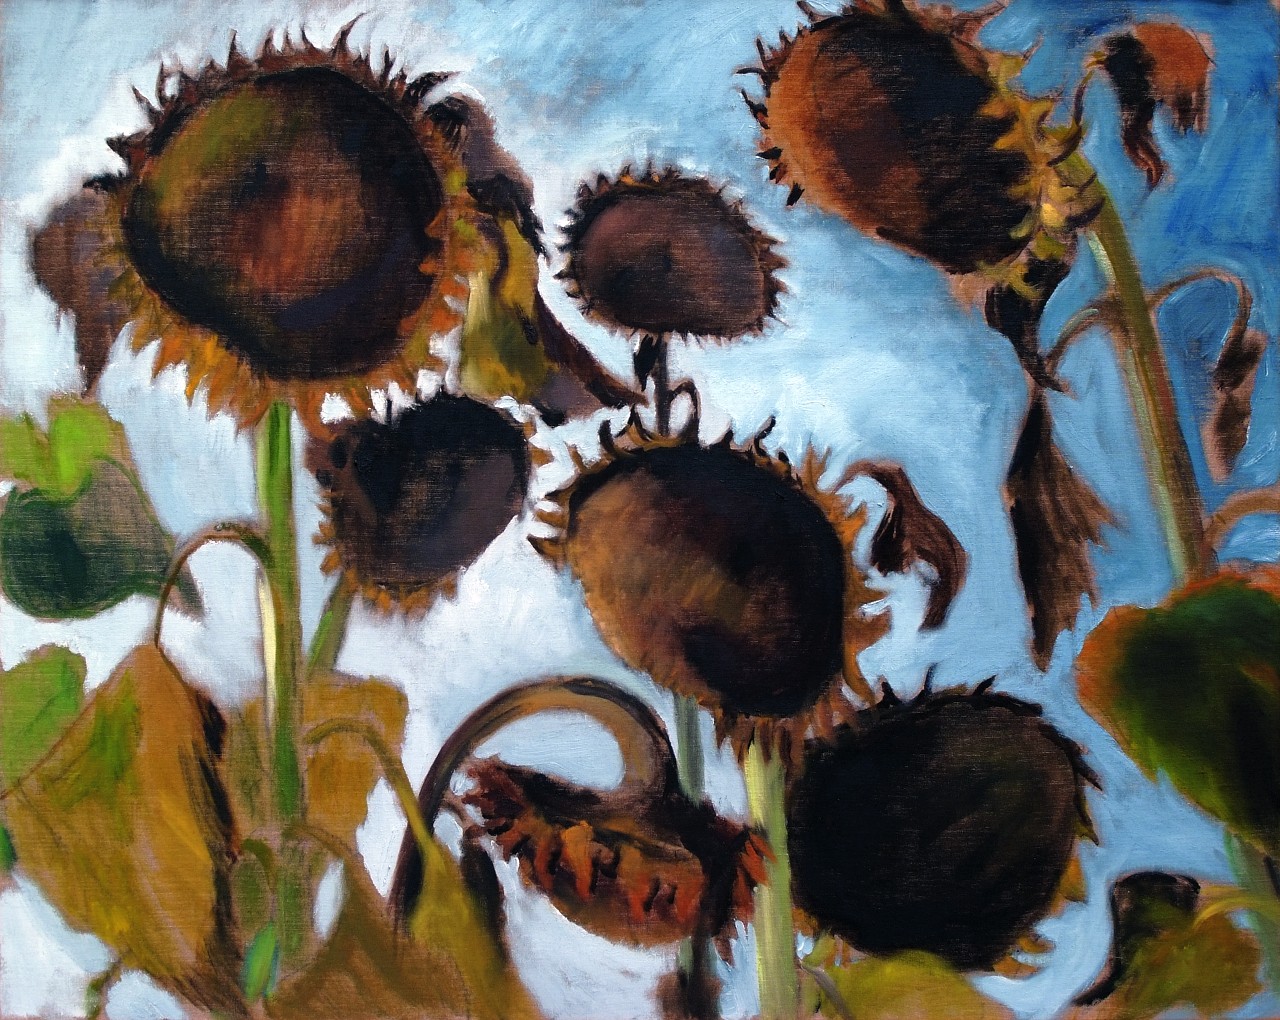 Harald Scheicher, Ripe Sunflowers, 2000